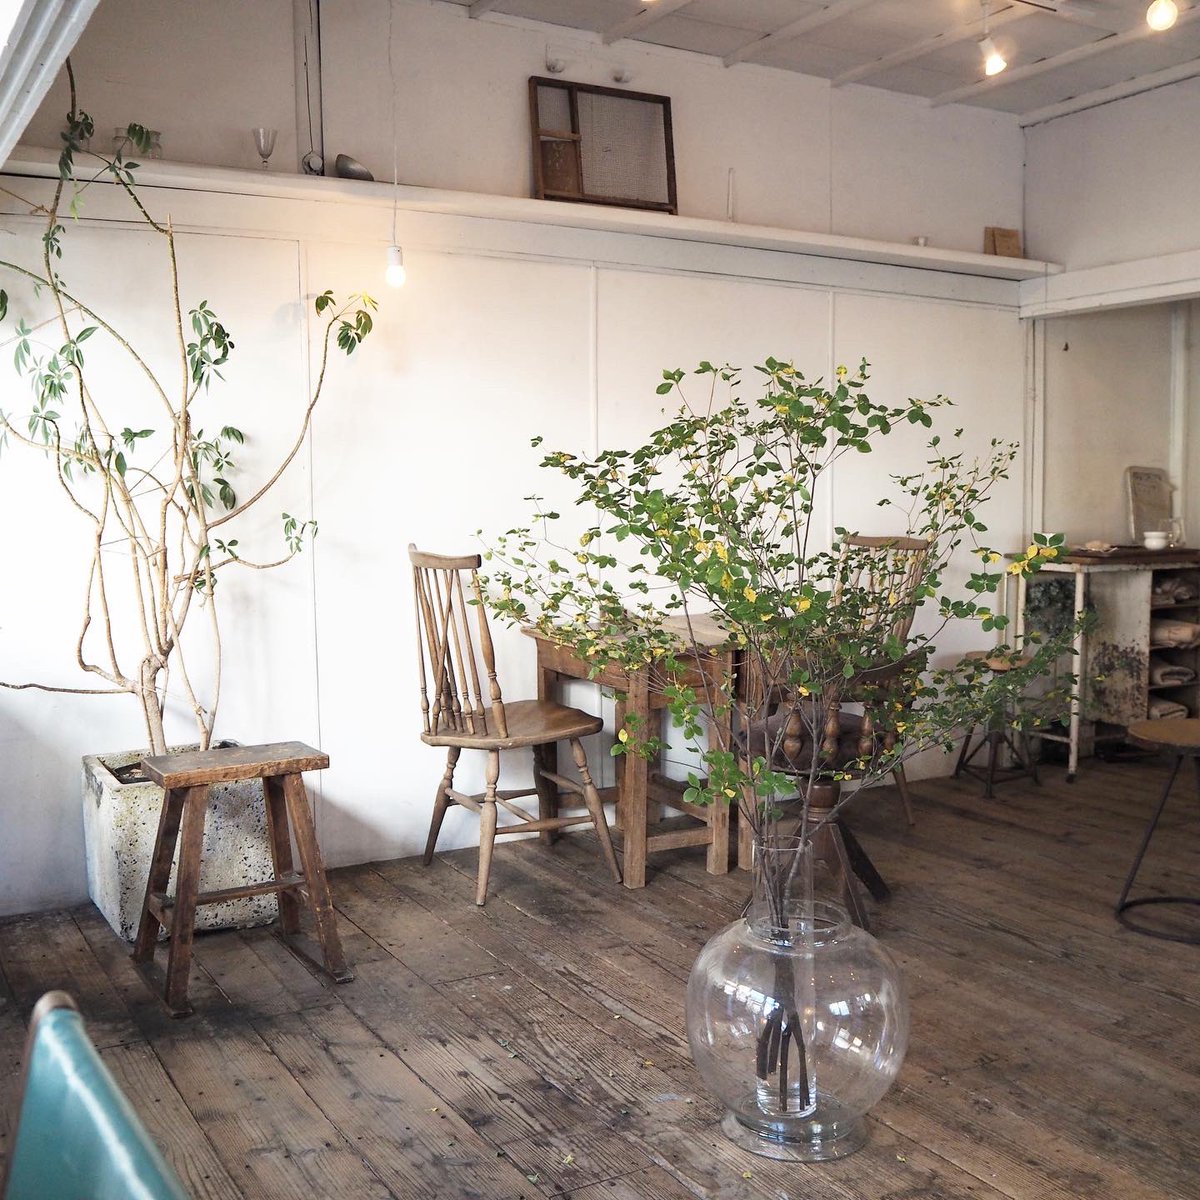 寺崎コーヒーさん、とてもおしゃれで居心地の良い空間でした🫧
甲府すてきなカフェがたくさんで楽しかったな〜